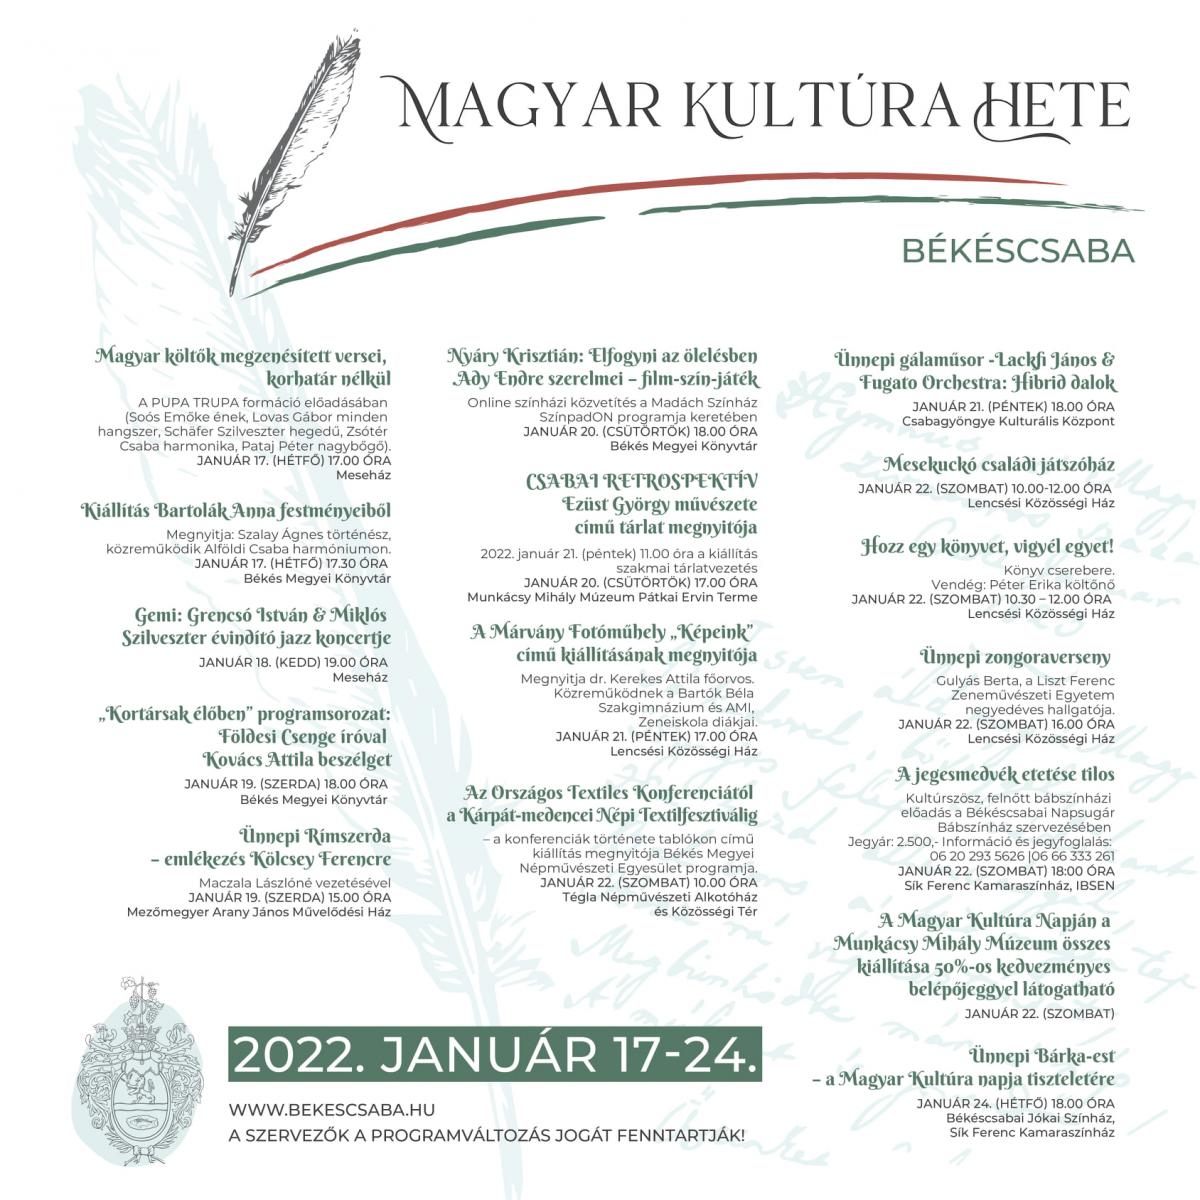 Magyar kultúra hete Békéscsabán 2022